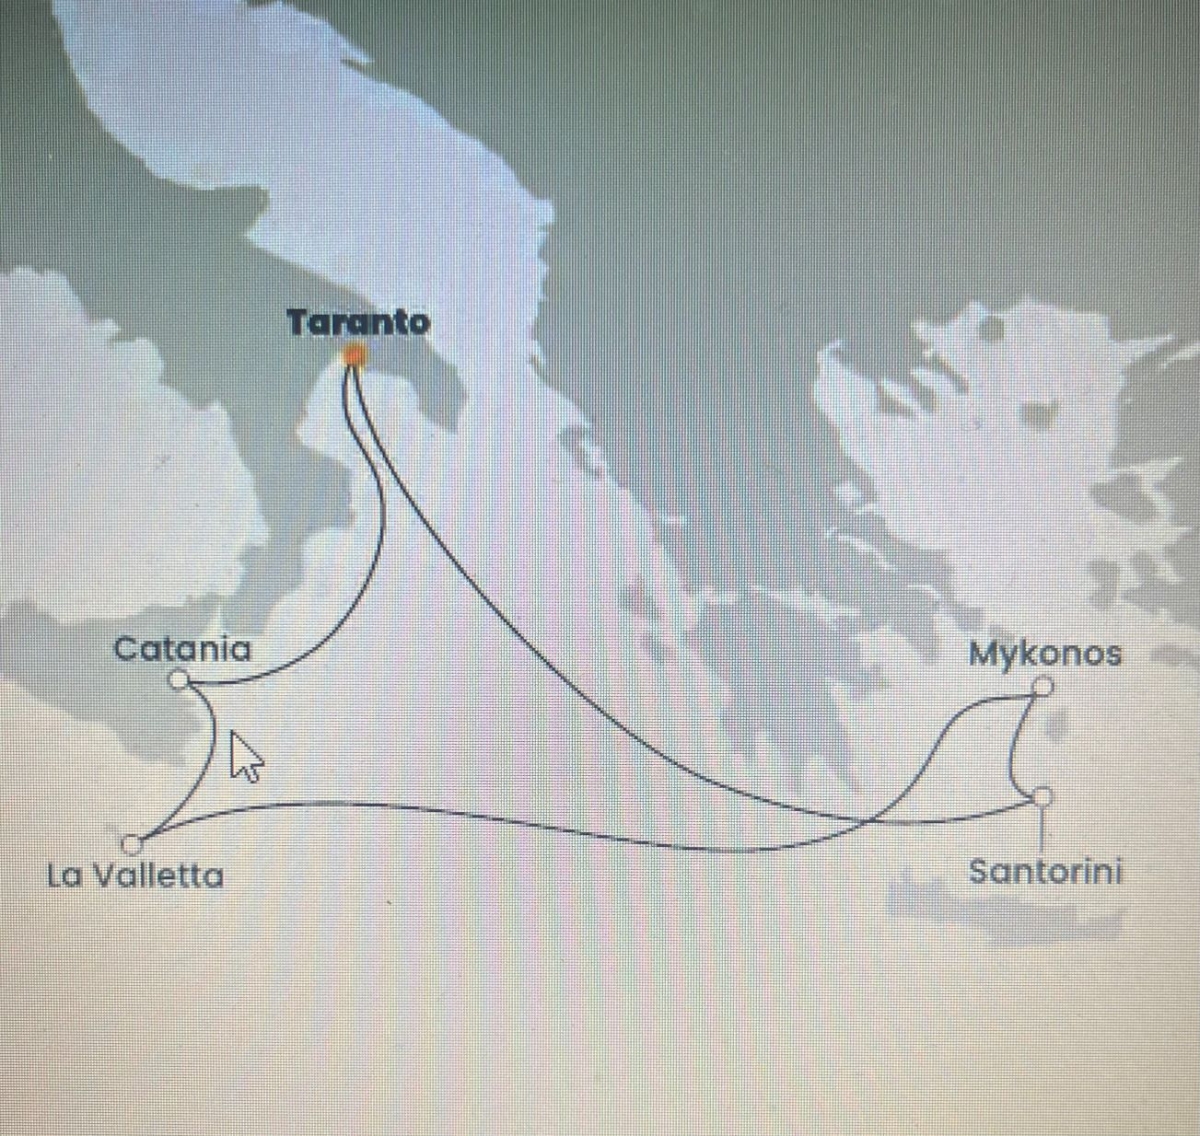 ISOLE GRECHE, crociera+volo da Cagliari 